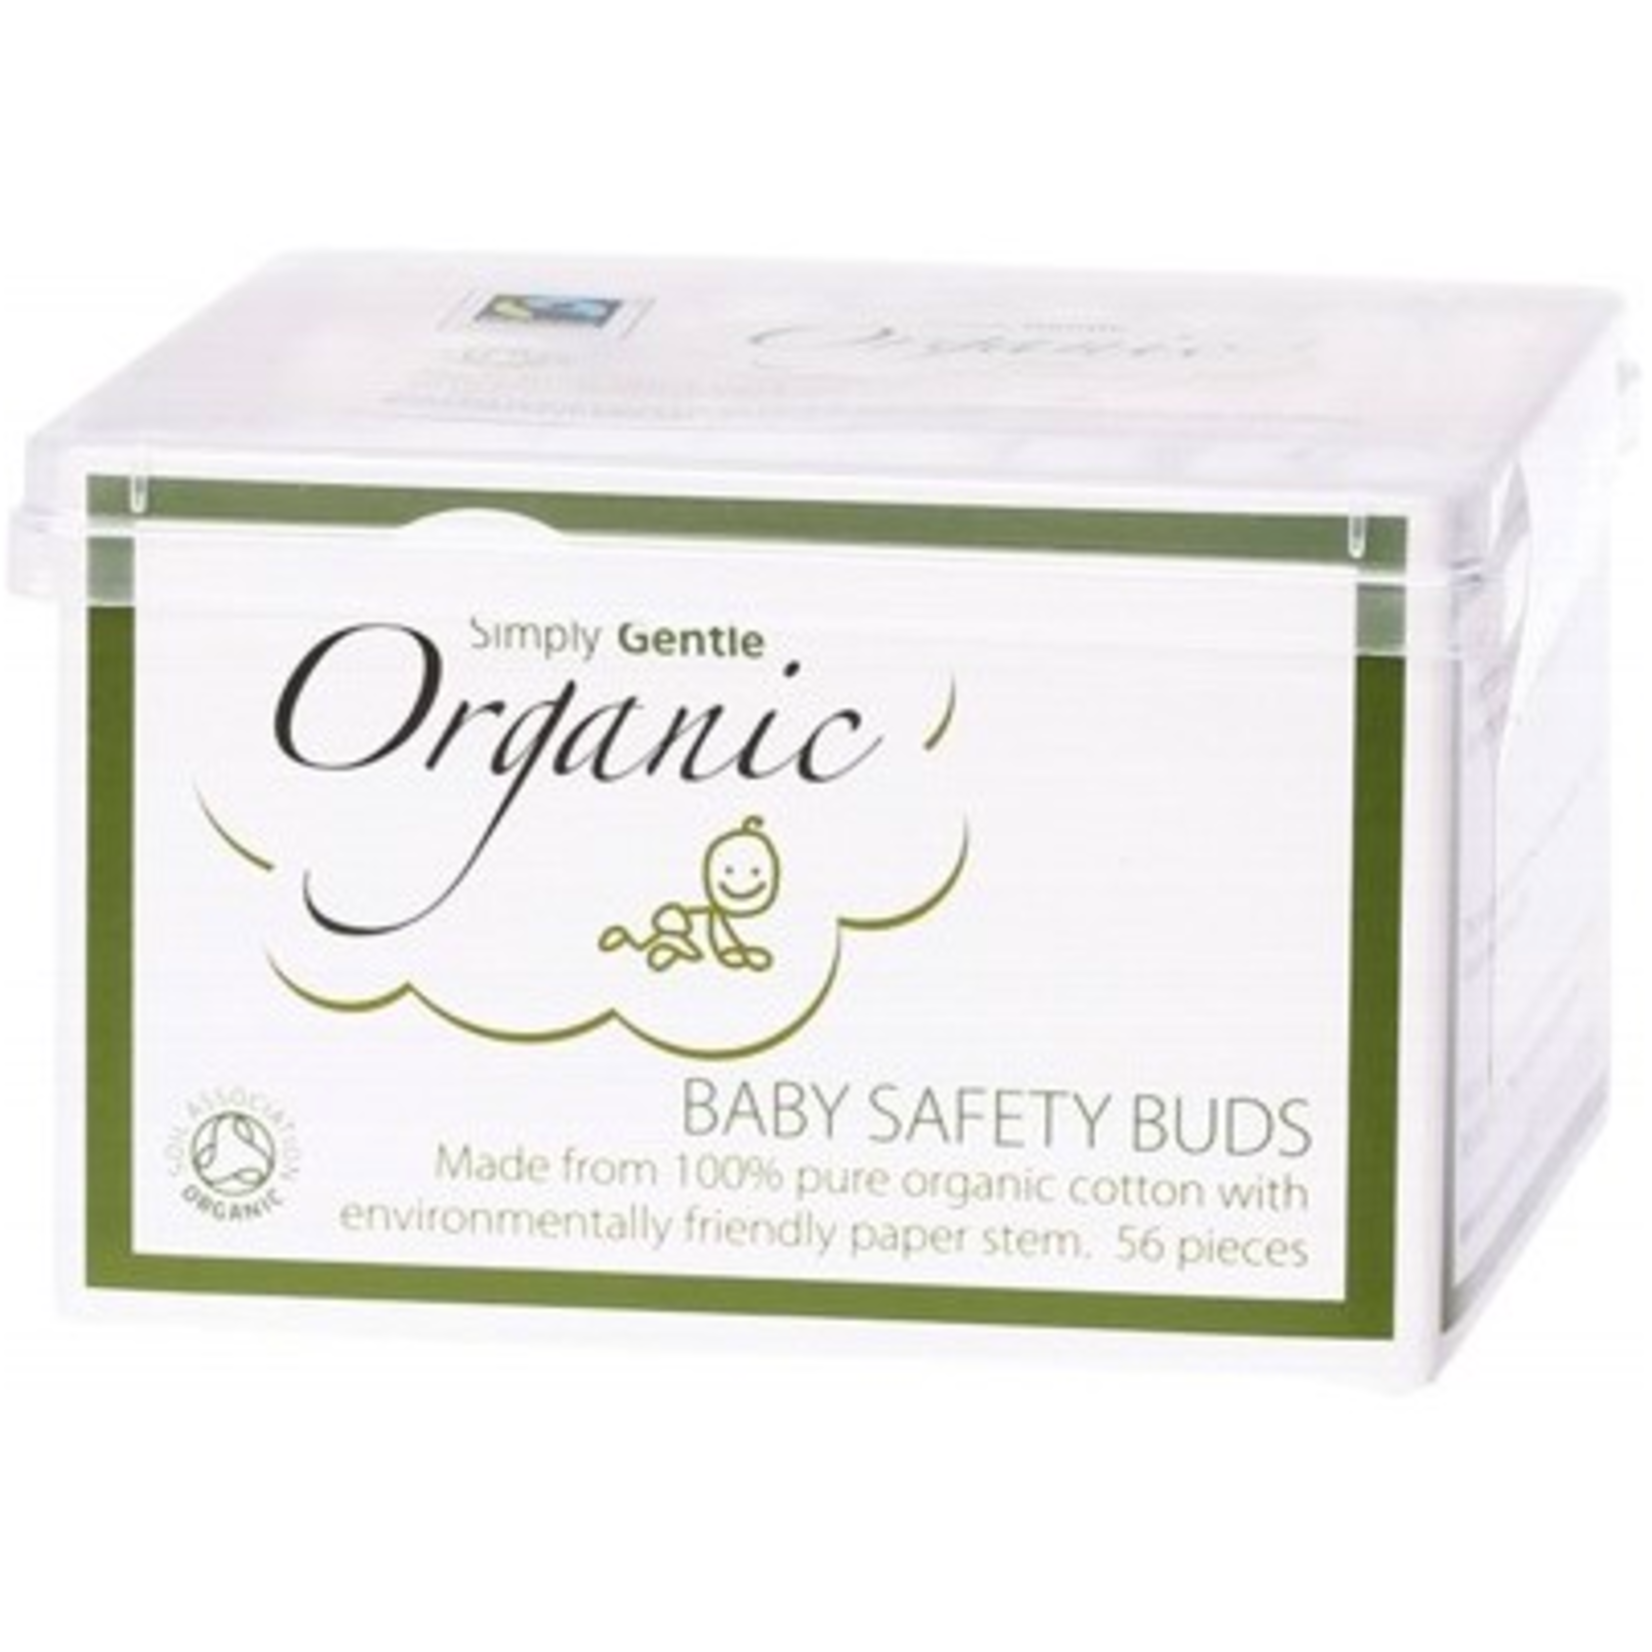 Simply Gentle Organic Simply Gentle Organic Baby Safety Buds